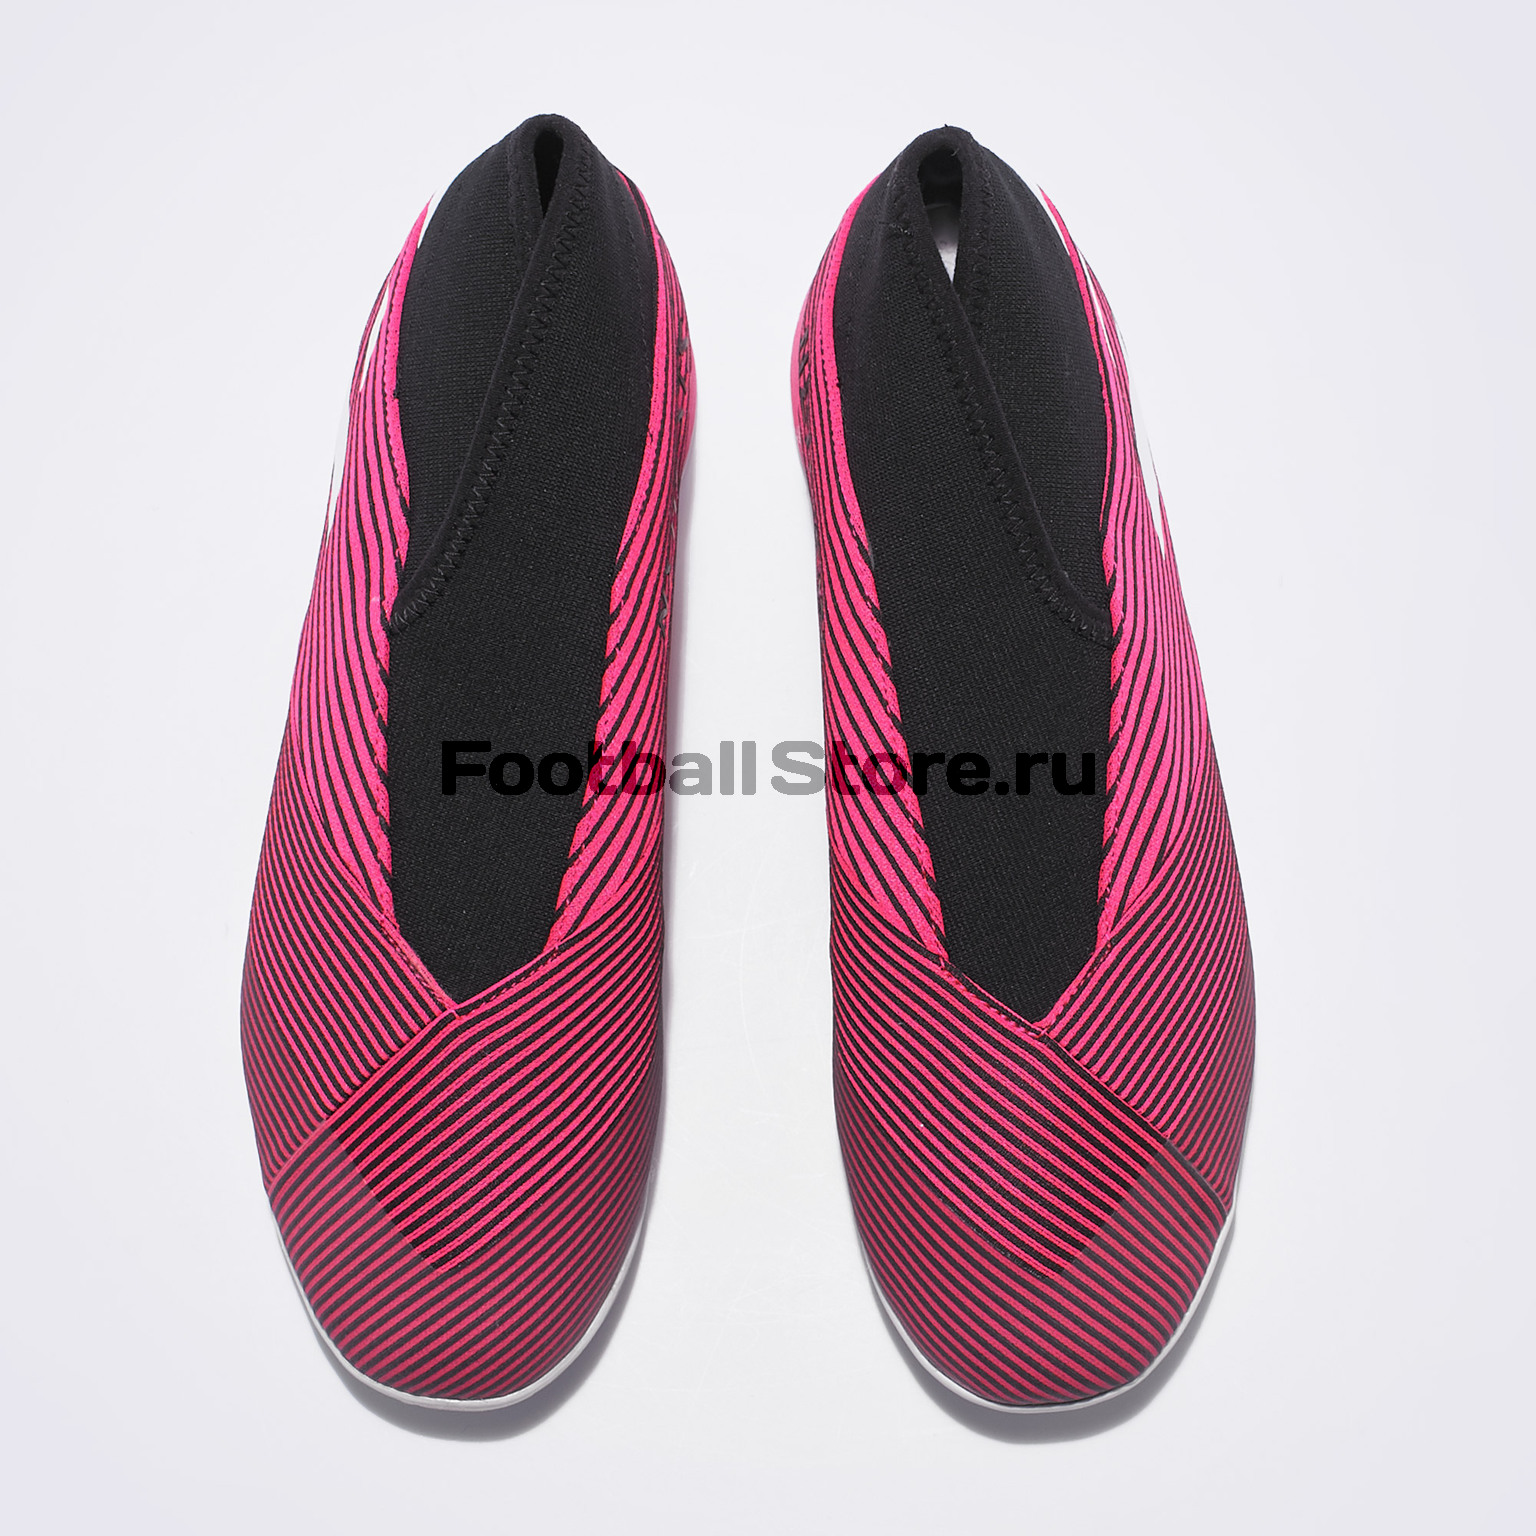 Футзалки Adidas Nemeziz 19.3 LL IN EF0393